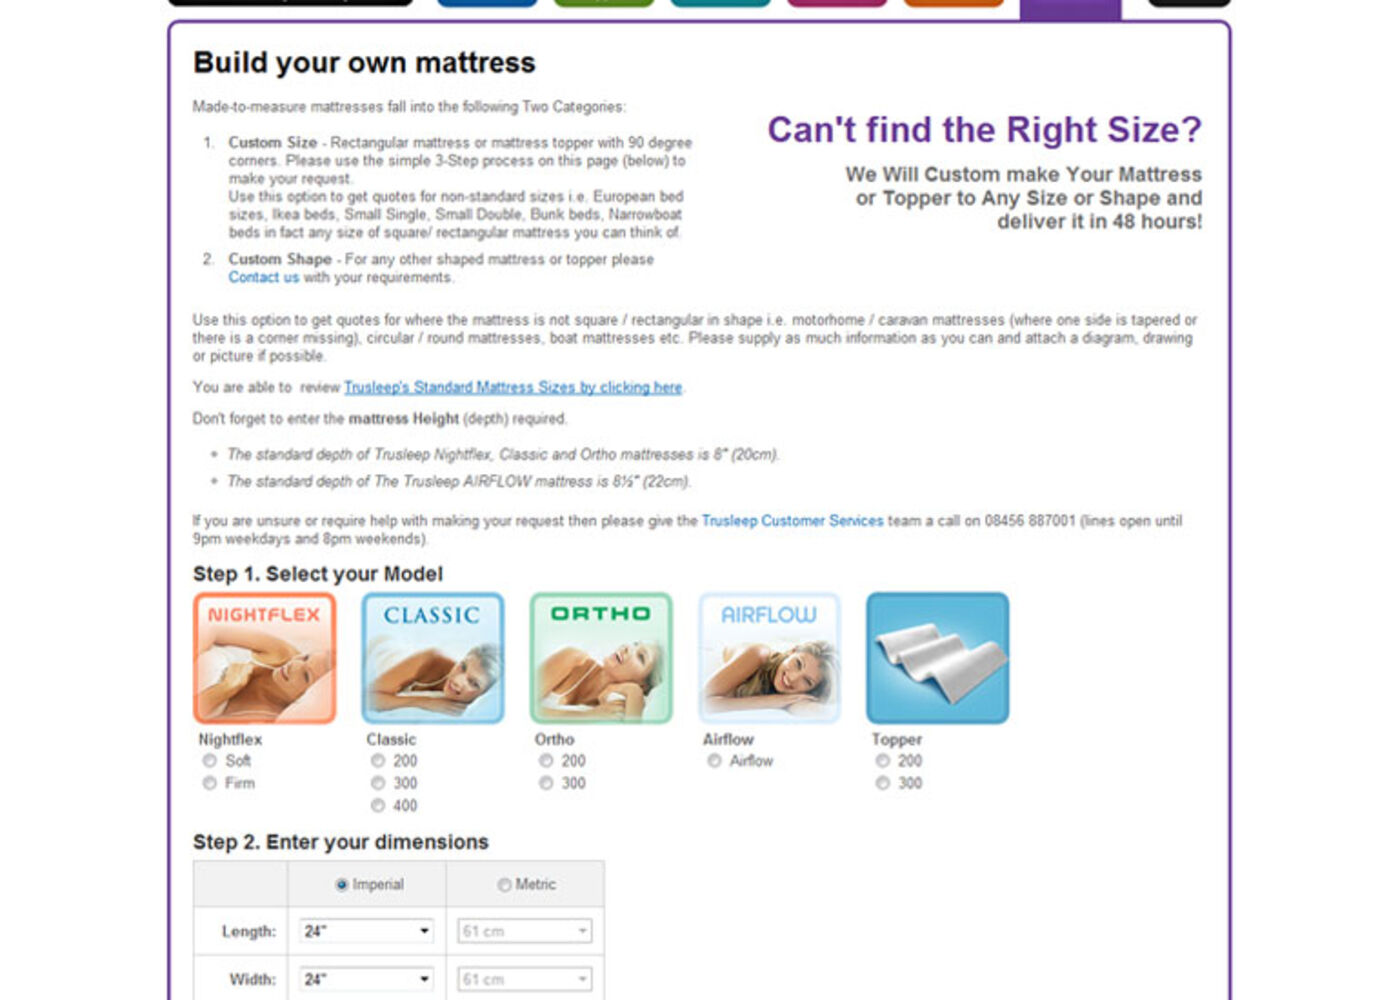 TruSleep Build your own mattress - TruSleep